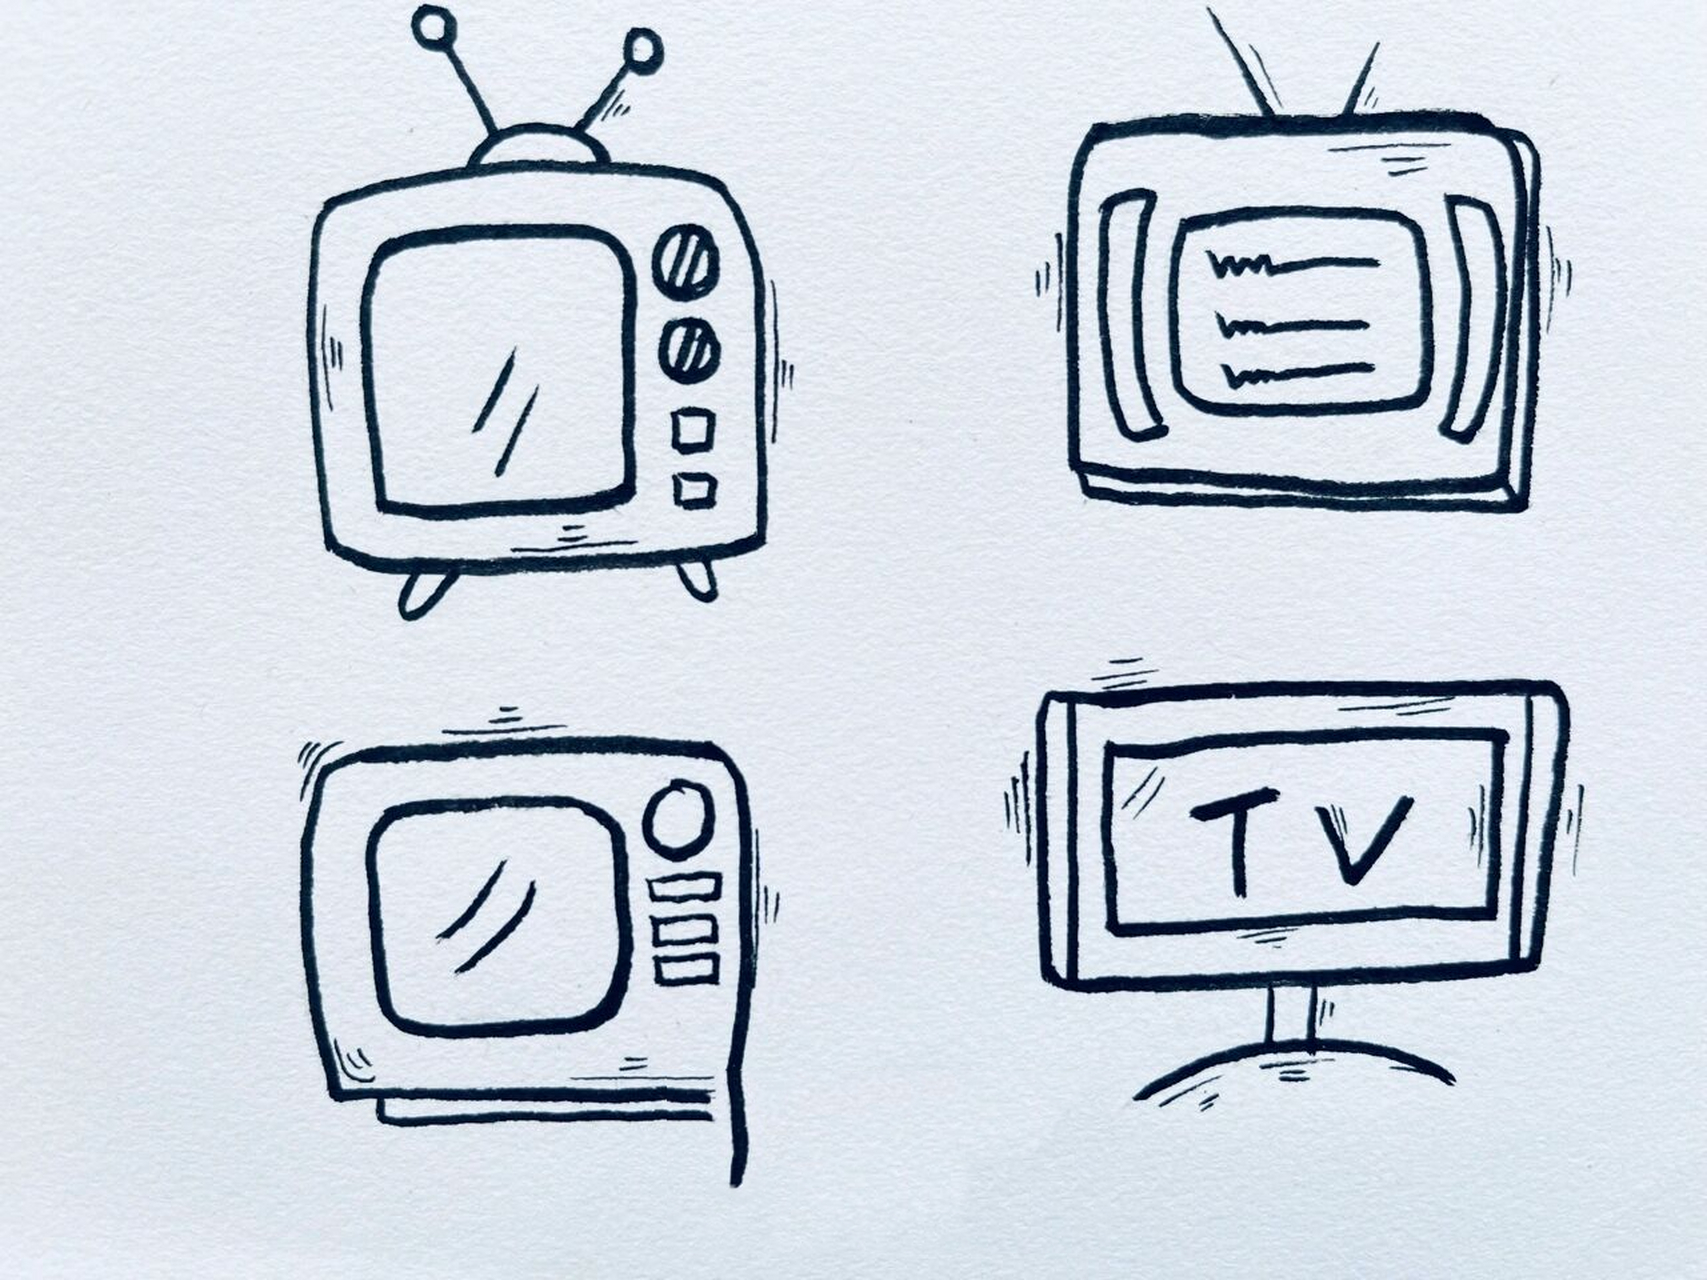 电视机简笔画 现代化图片